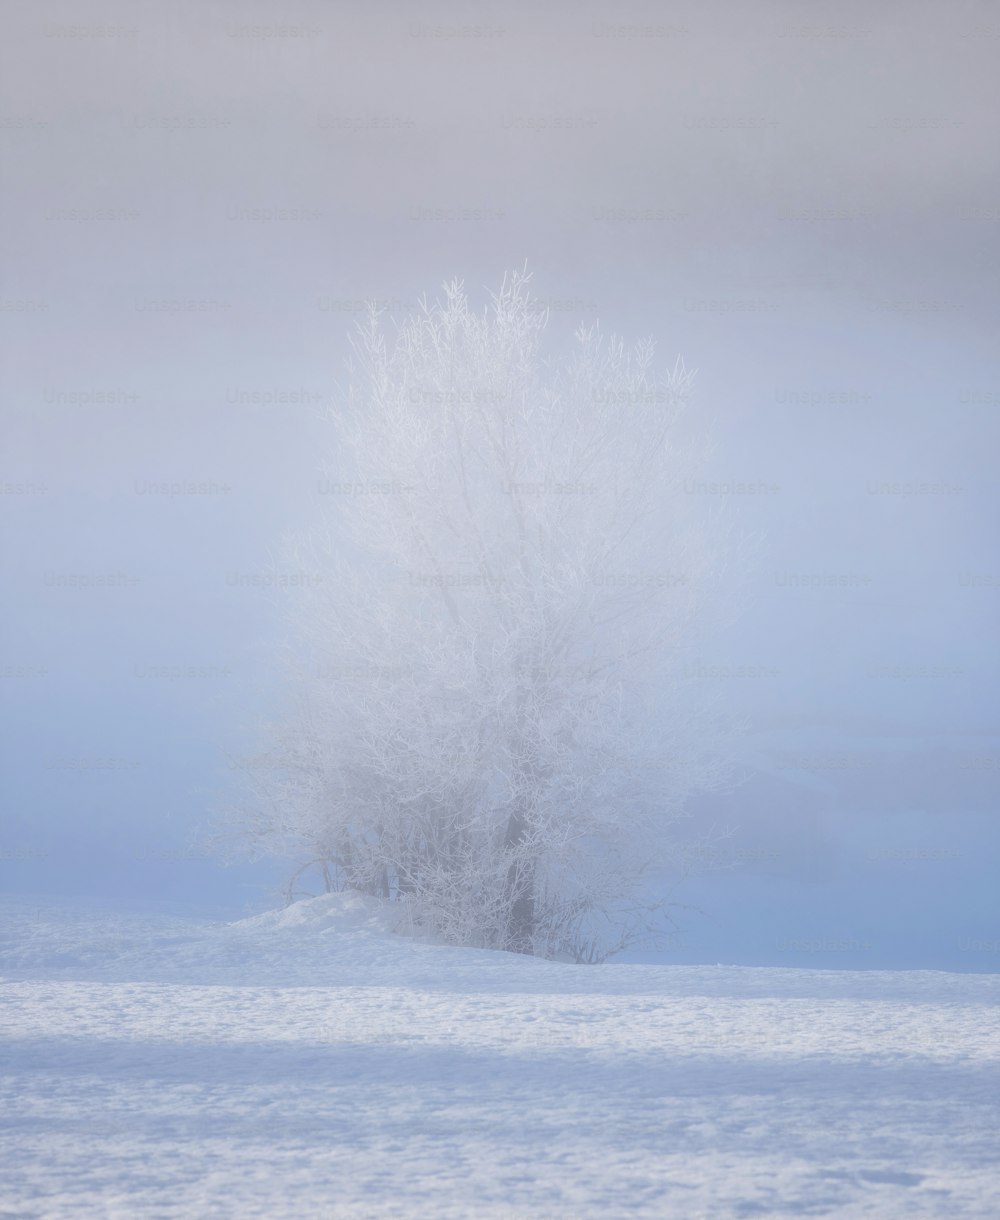 Ein einsamer Baum inmitten eines verschneiten Feldes